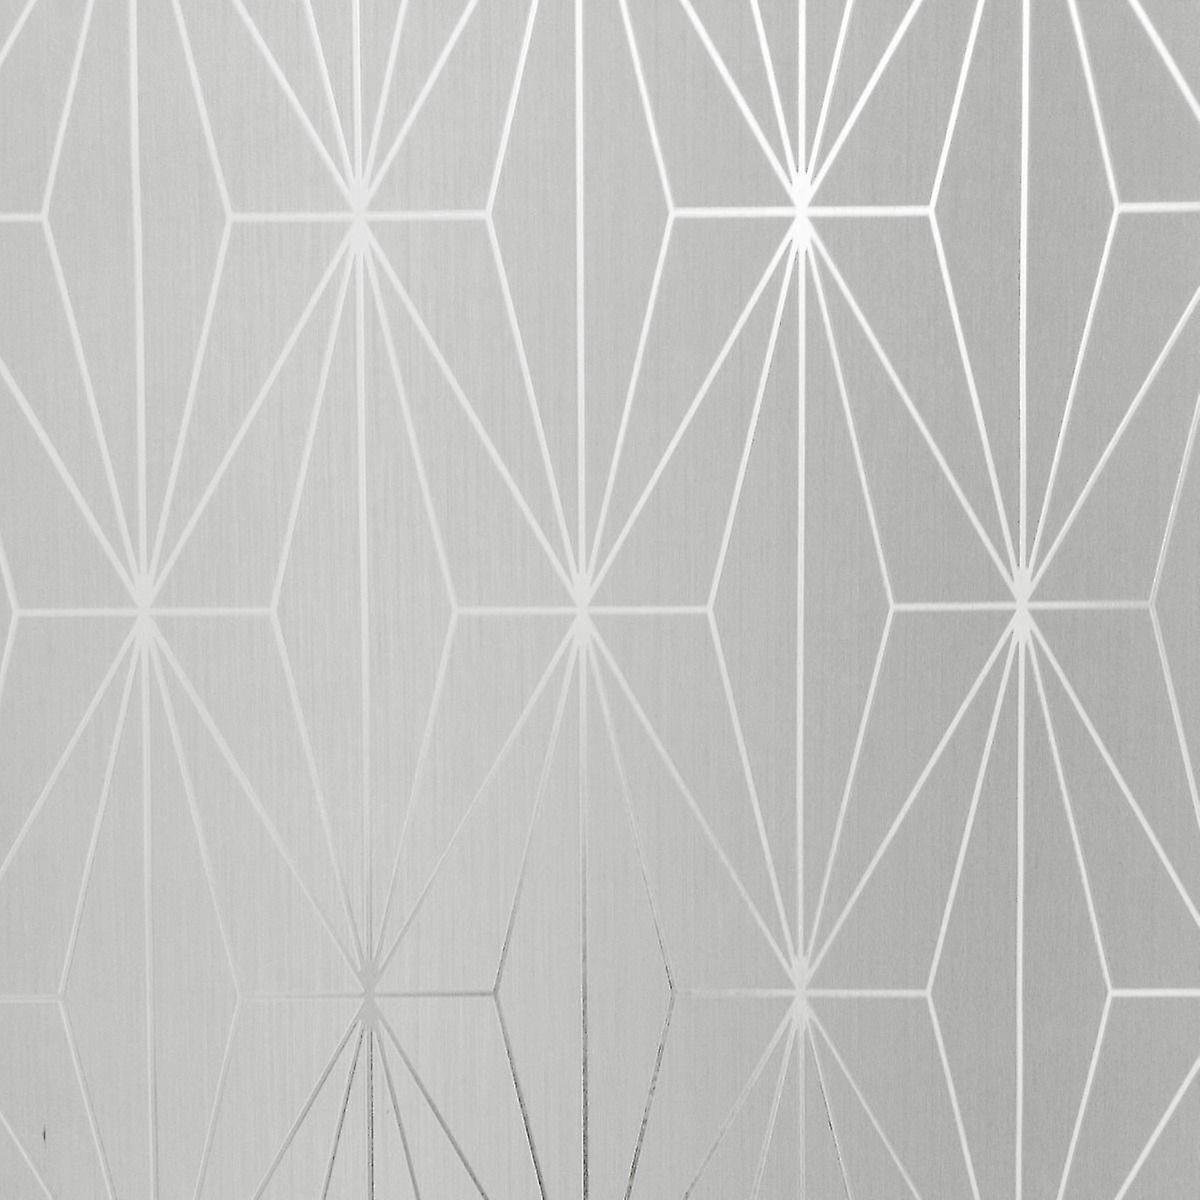 Dove Grey Silver Metallic Geometric Wallpaper Triangles - Triangle - HD Wallpaper 